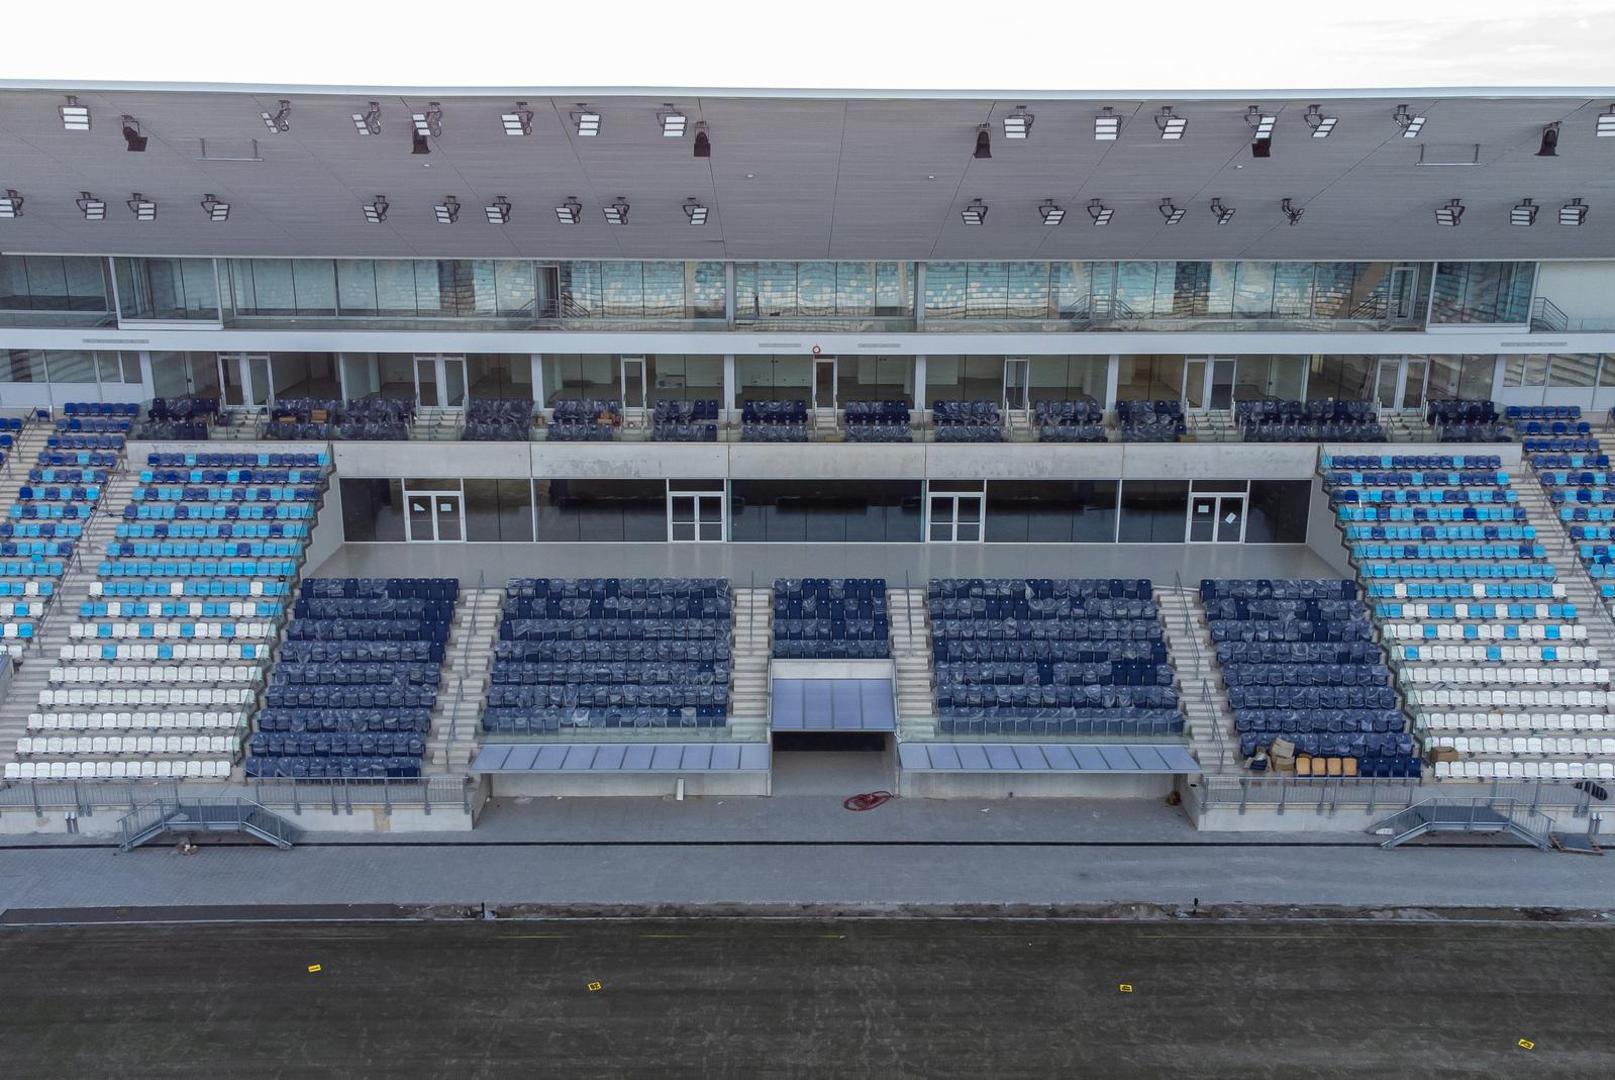 14.03.2023., Osijek - Zracna fotografija novog stadiona NK Osijek koji se nalazi na Pampasu. Photo: Davor Javorovic/PIXSELL